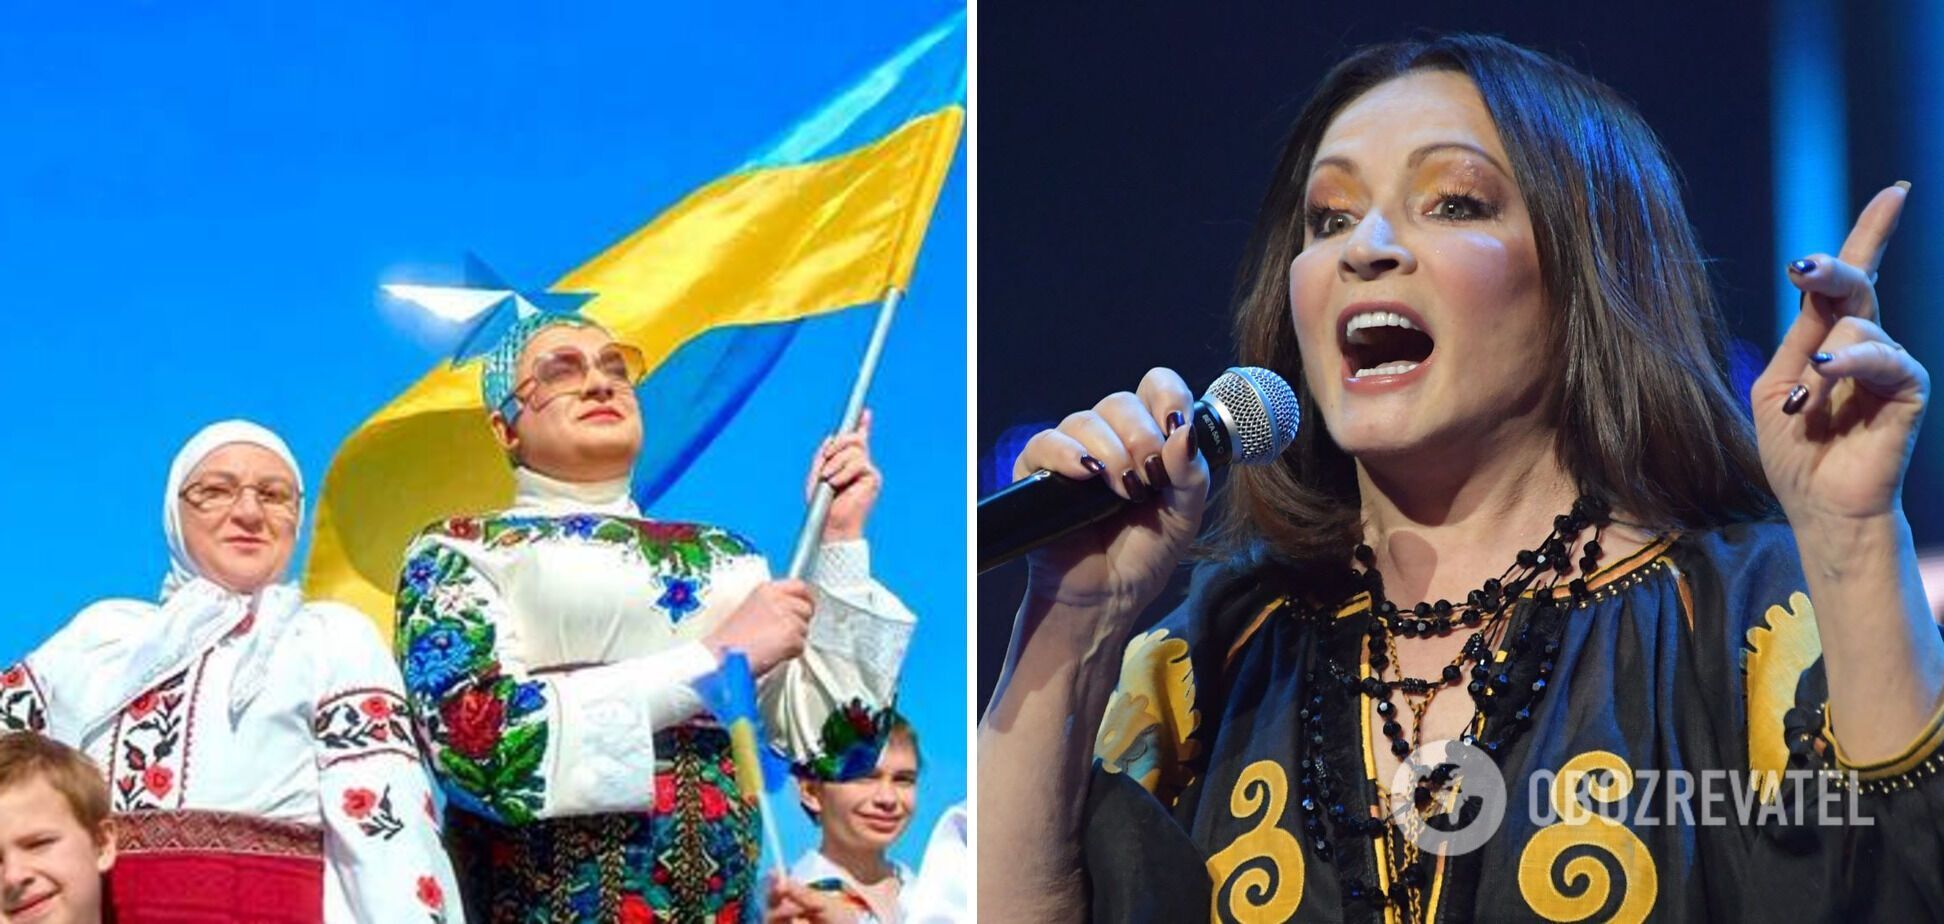 Оскар Кучера підтримав росіян, які слухають українських зірок: Марія Шукшина, ймовірно, збожеволіла